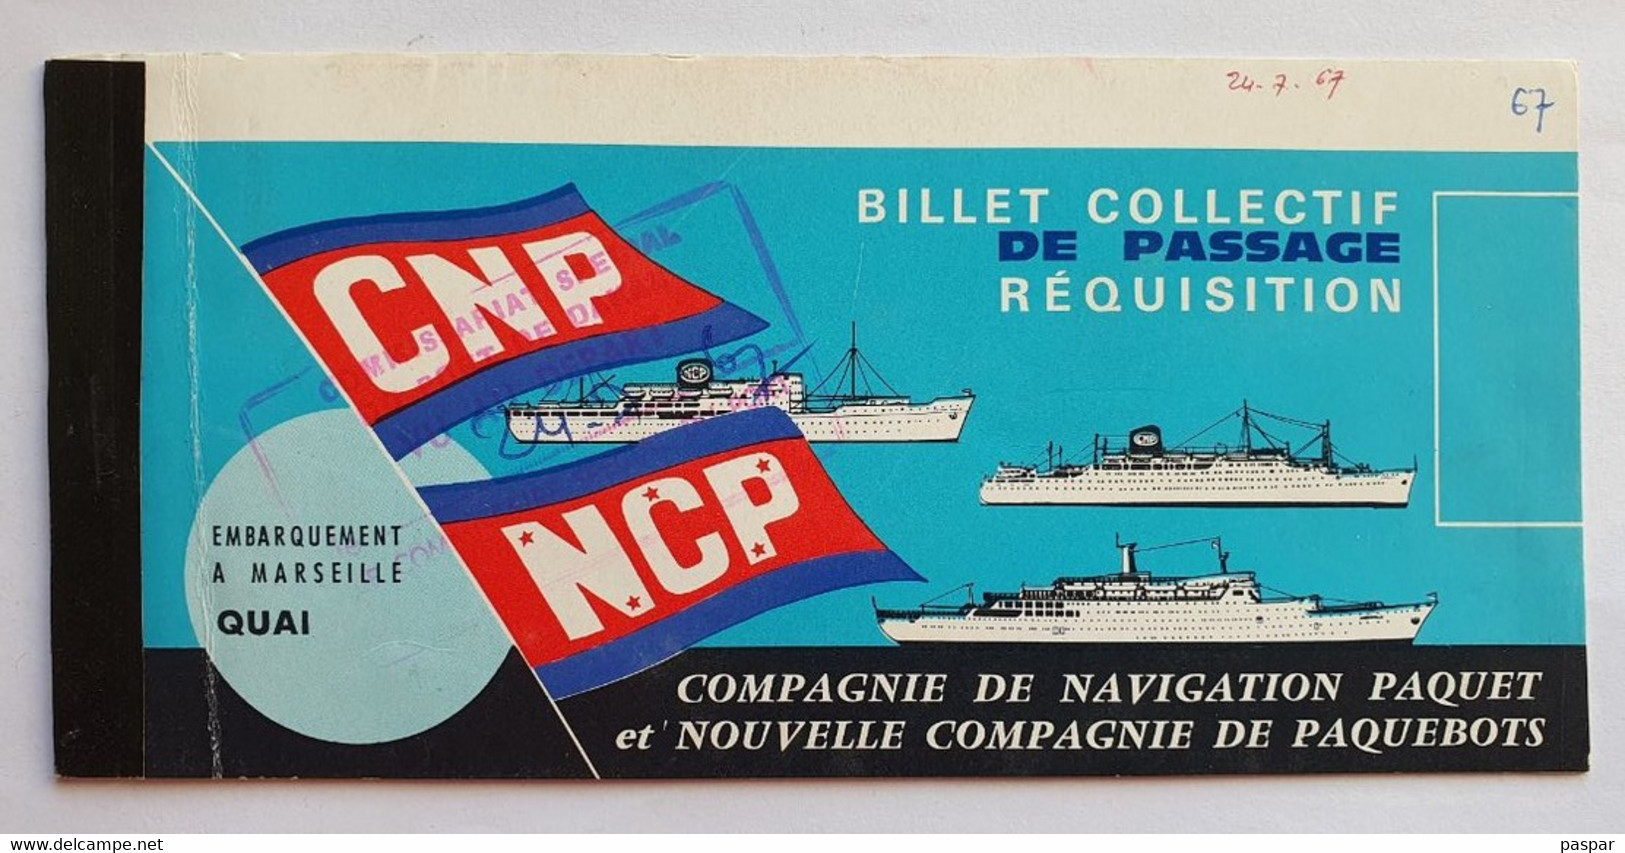 COMPAGNIE DE NAVIGATION PAQUET - Billet De Passage Réquisition DAKAR MARSEILLE - Ancerville - 1967 - Mundo